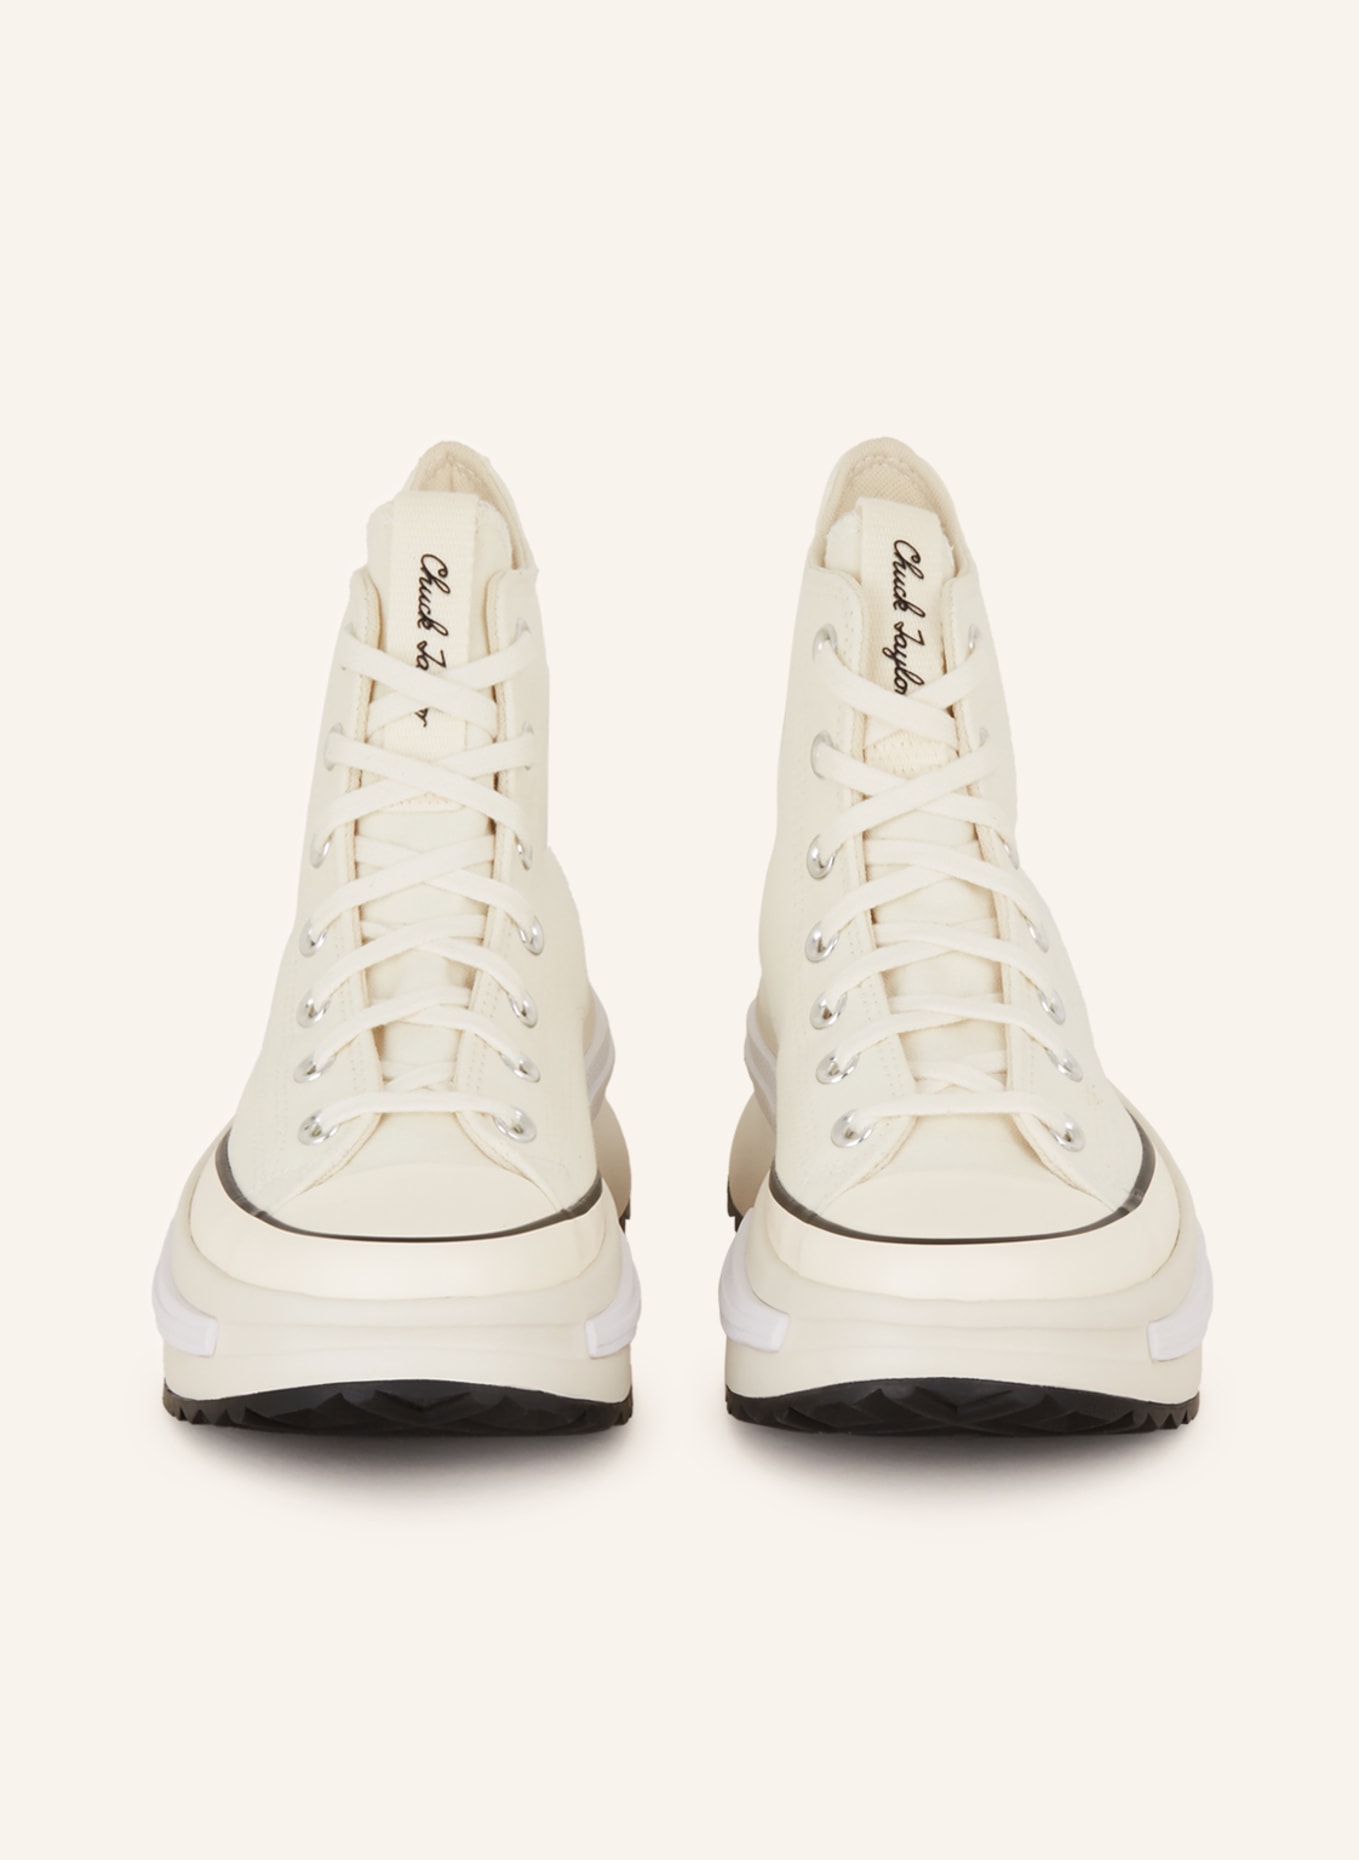 CONVERSE Hightop-Sneaker RUN STAR LEGACY CX, Farbe: ECRU (Bild 3)